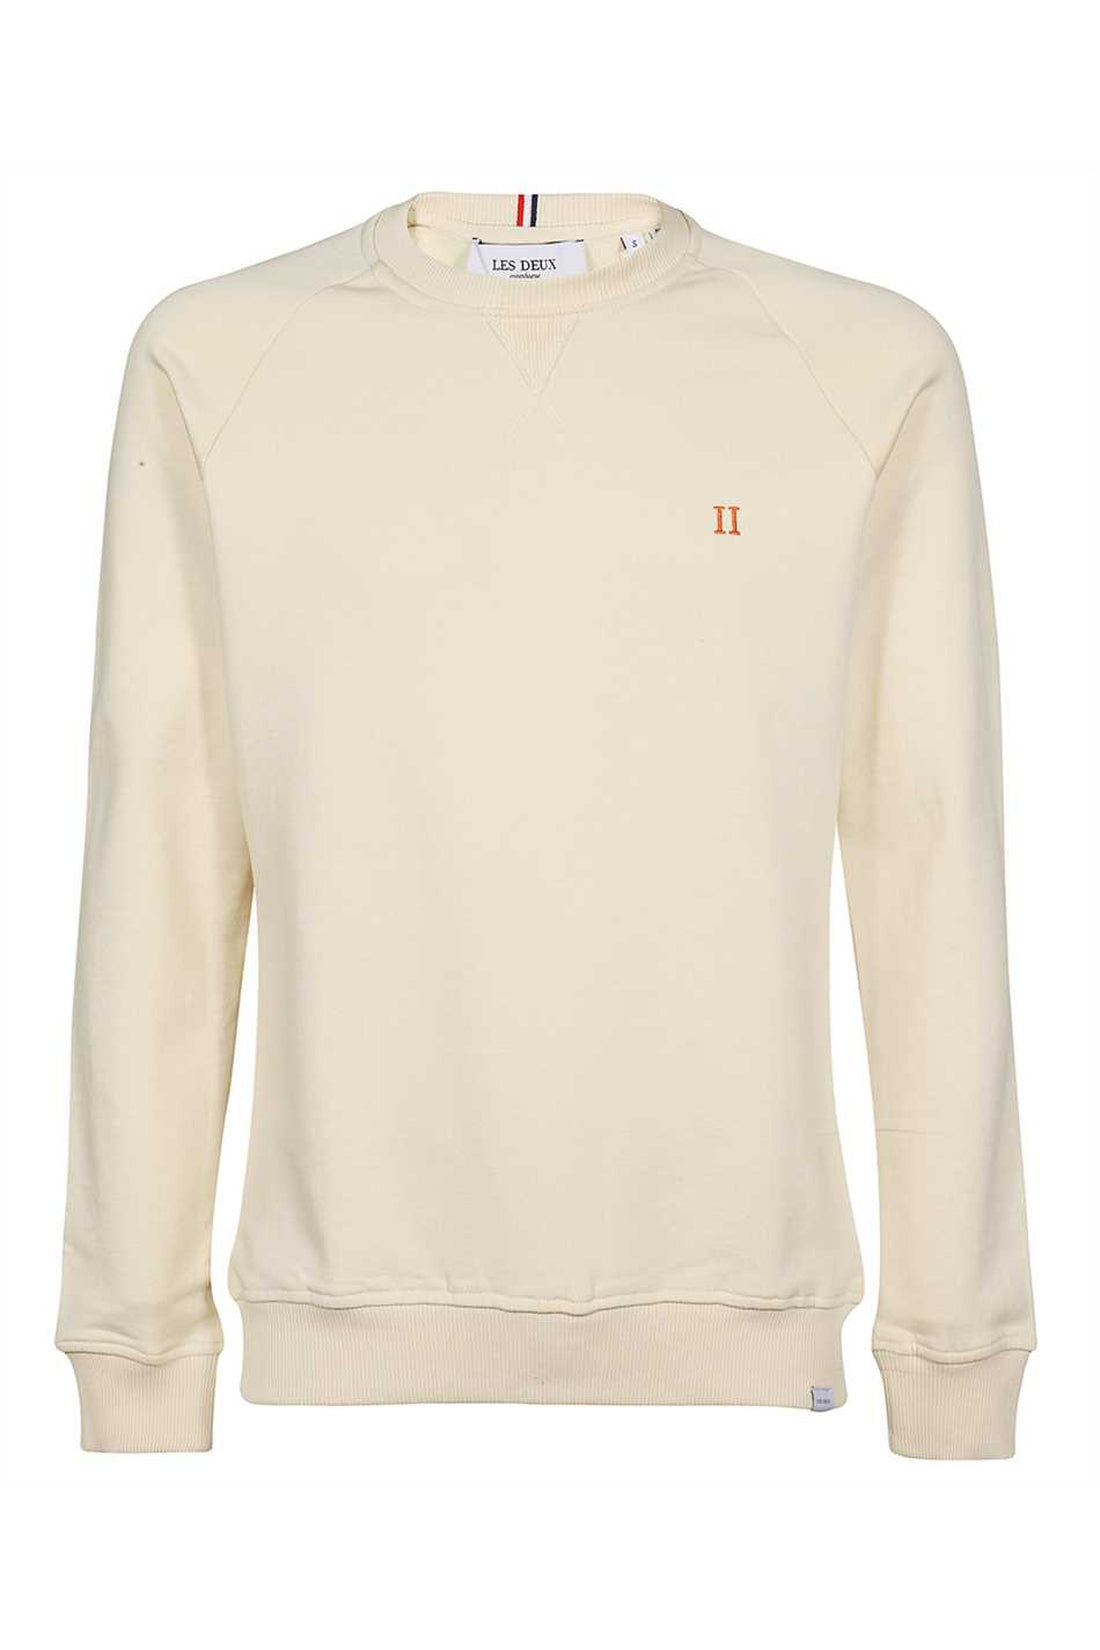 Les Deux-OUTLET-SALE-Nørregaard cotton crew-neck sweatshirt-ARCHIVIST